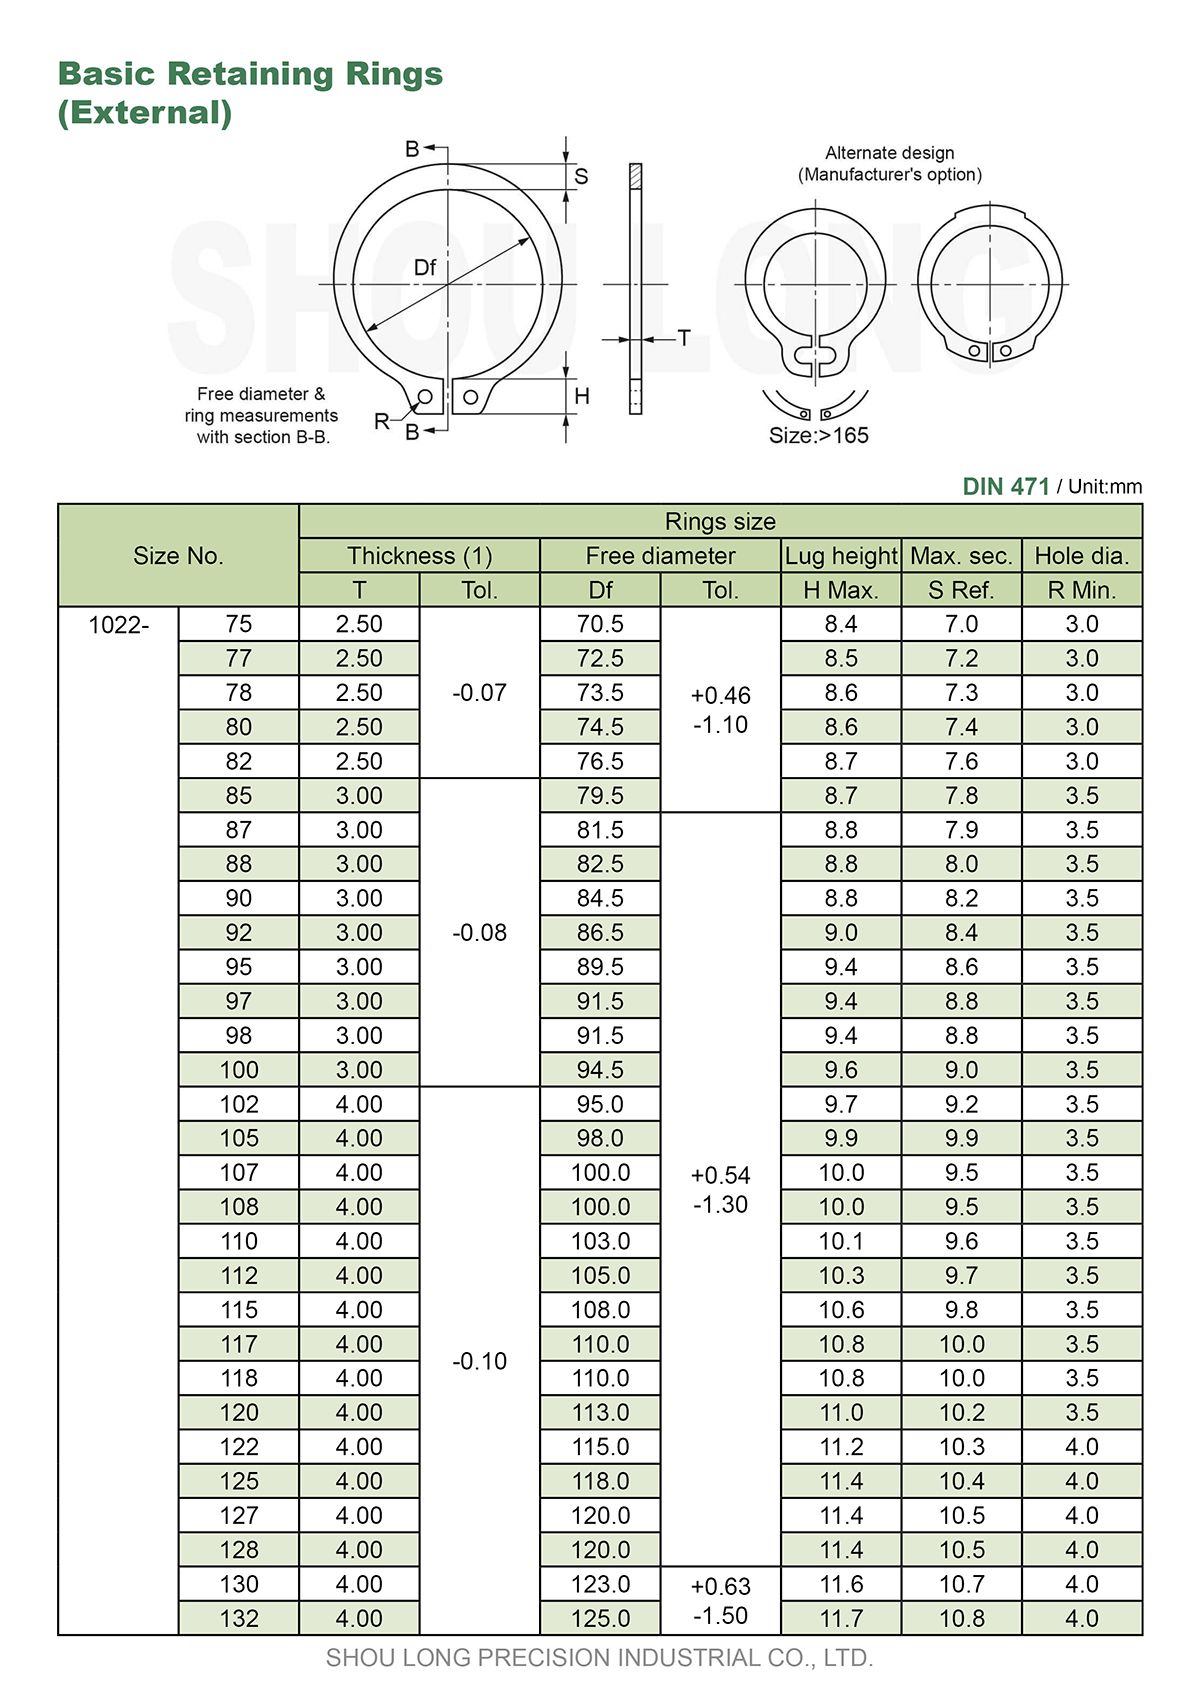 مواصفات حلقات الاحتفاظ الأساسية بالمقاسات المترية للعمود DIN471-3